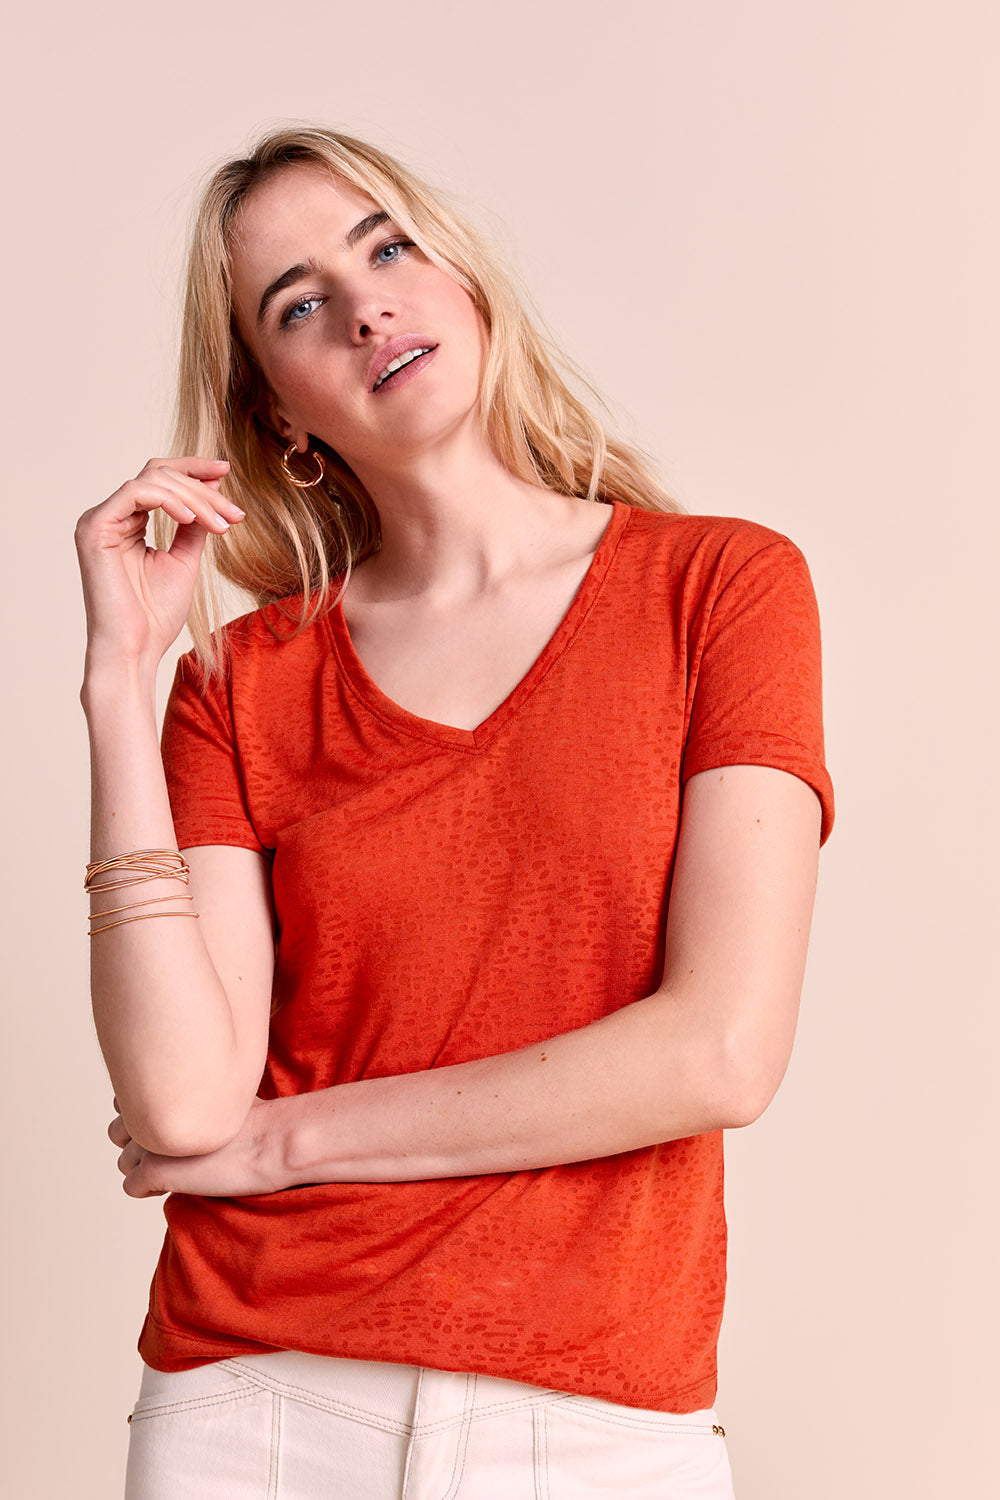 MEGGIE - T-shirt orange fluo en maille dévorée